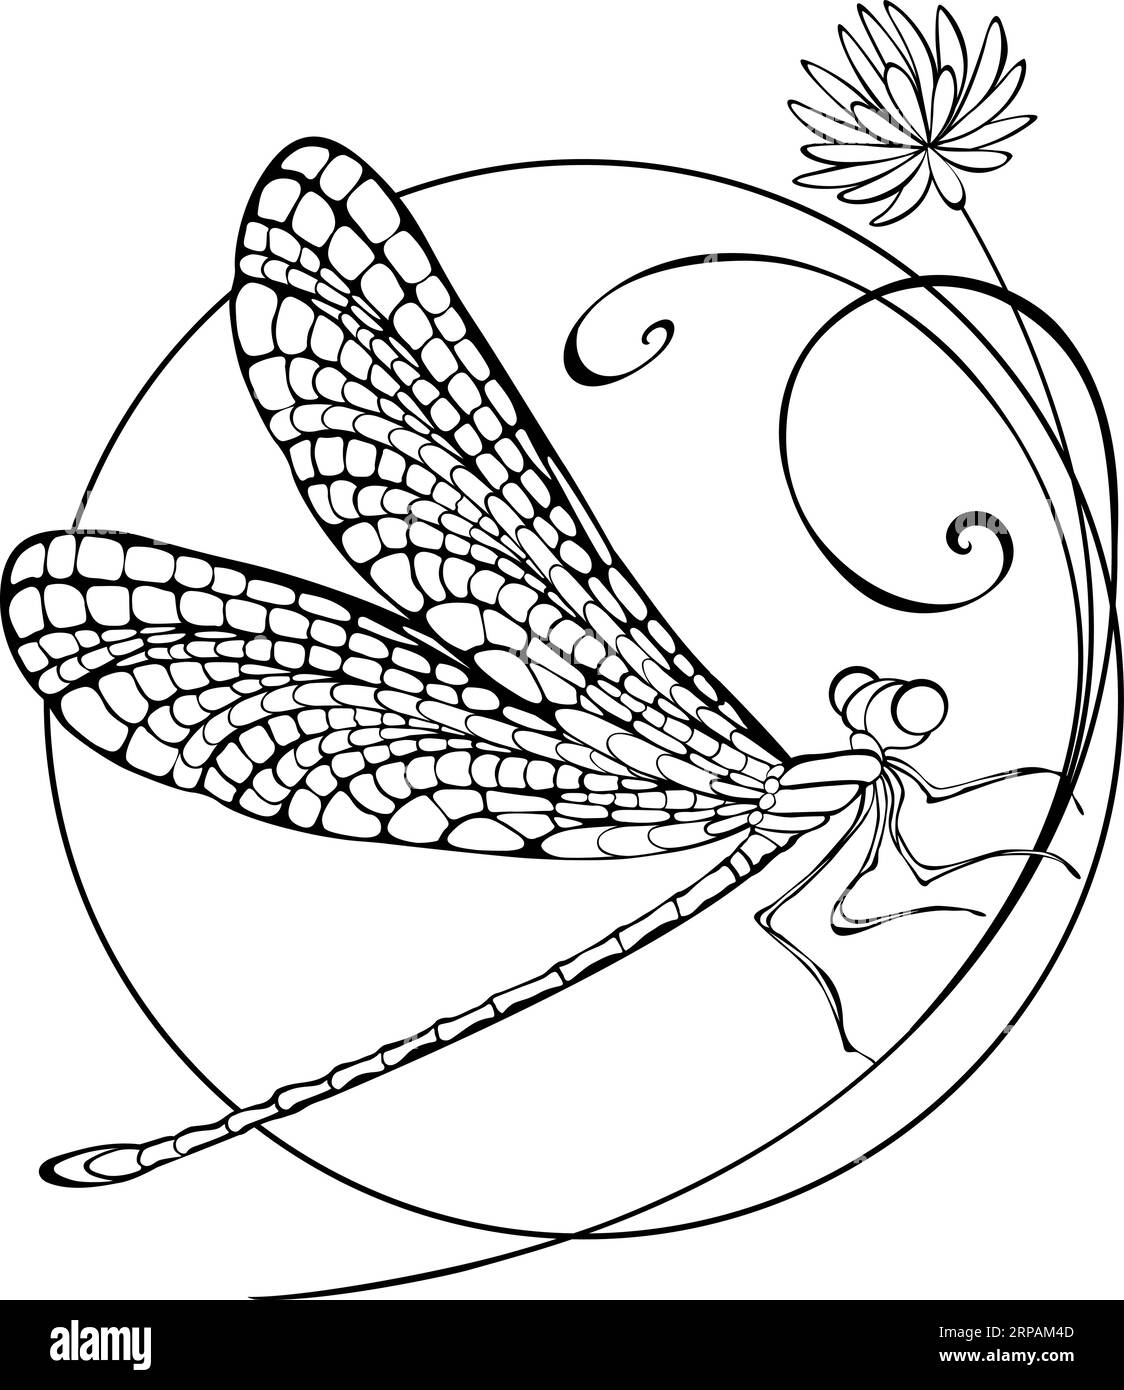 Assis en cercle sur la fine fleur sauvage, artistiquement dessiné, libellule profilée avec des ailes détaillées sur fond blanc. Décoration. Illustration de Vecteur